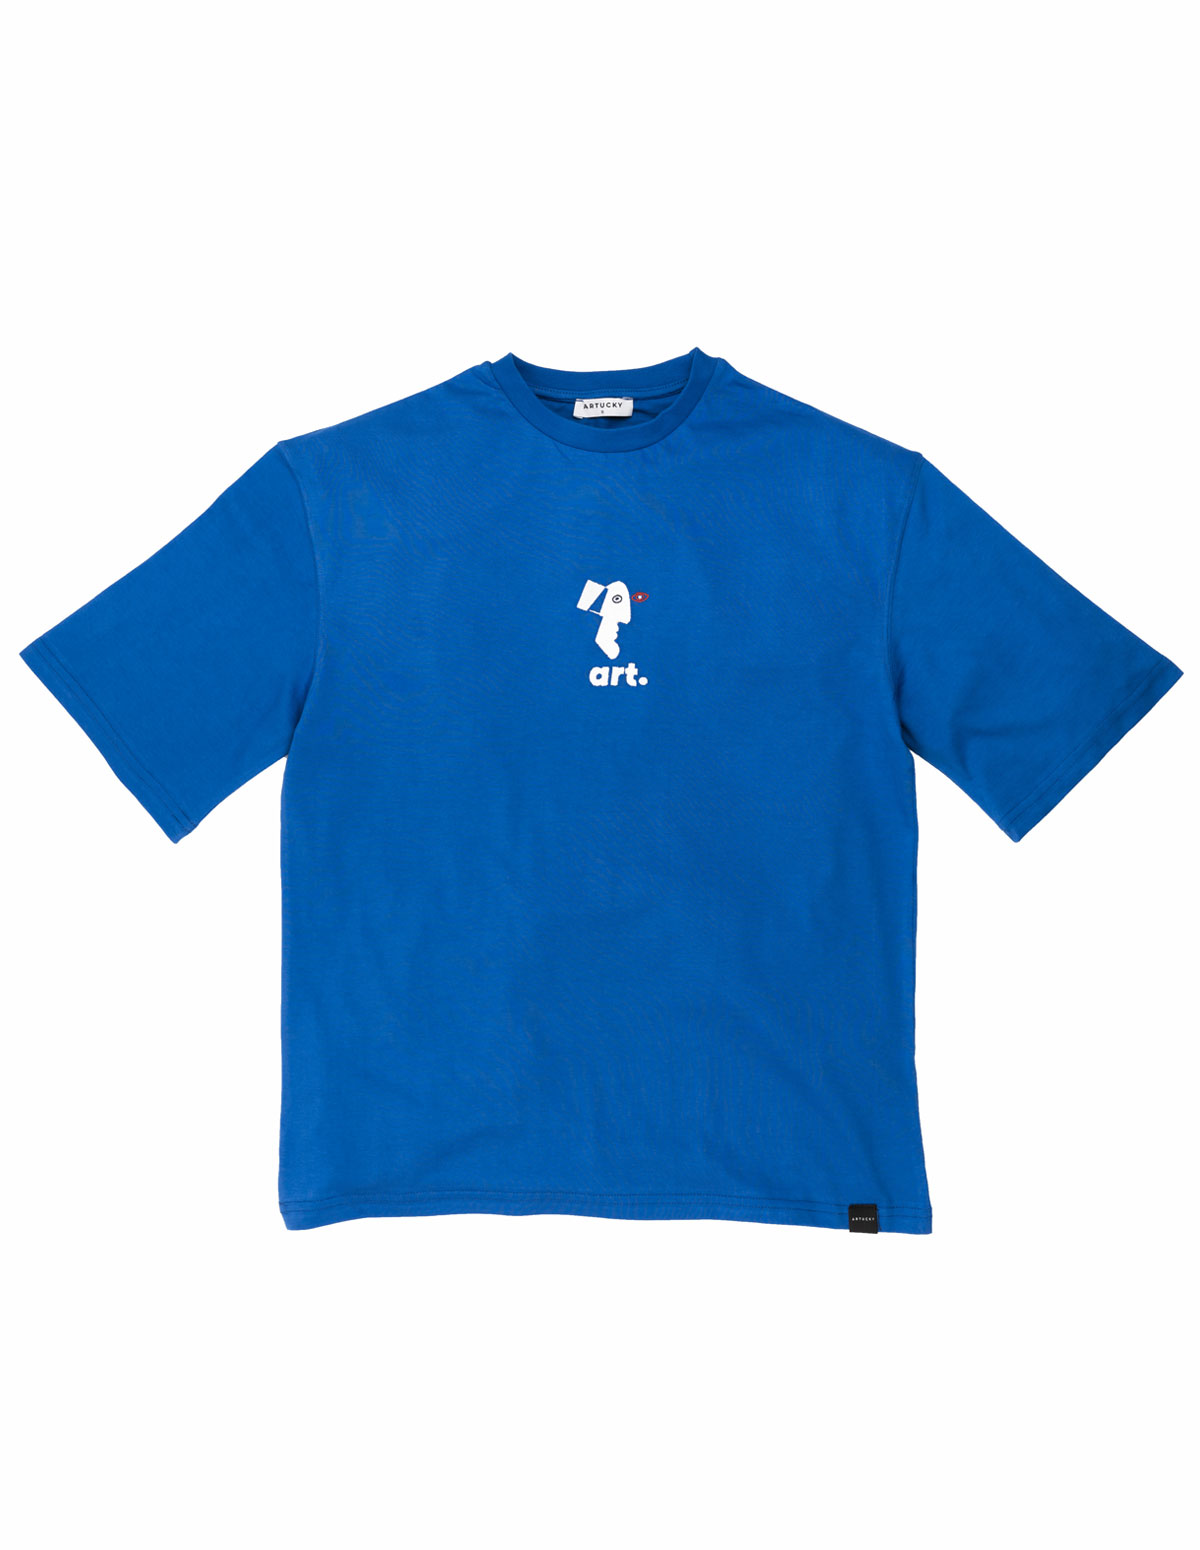 Pablo Picasso 1973, Oversize Sax blue T-Shirt